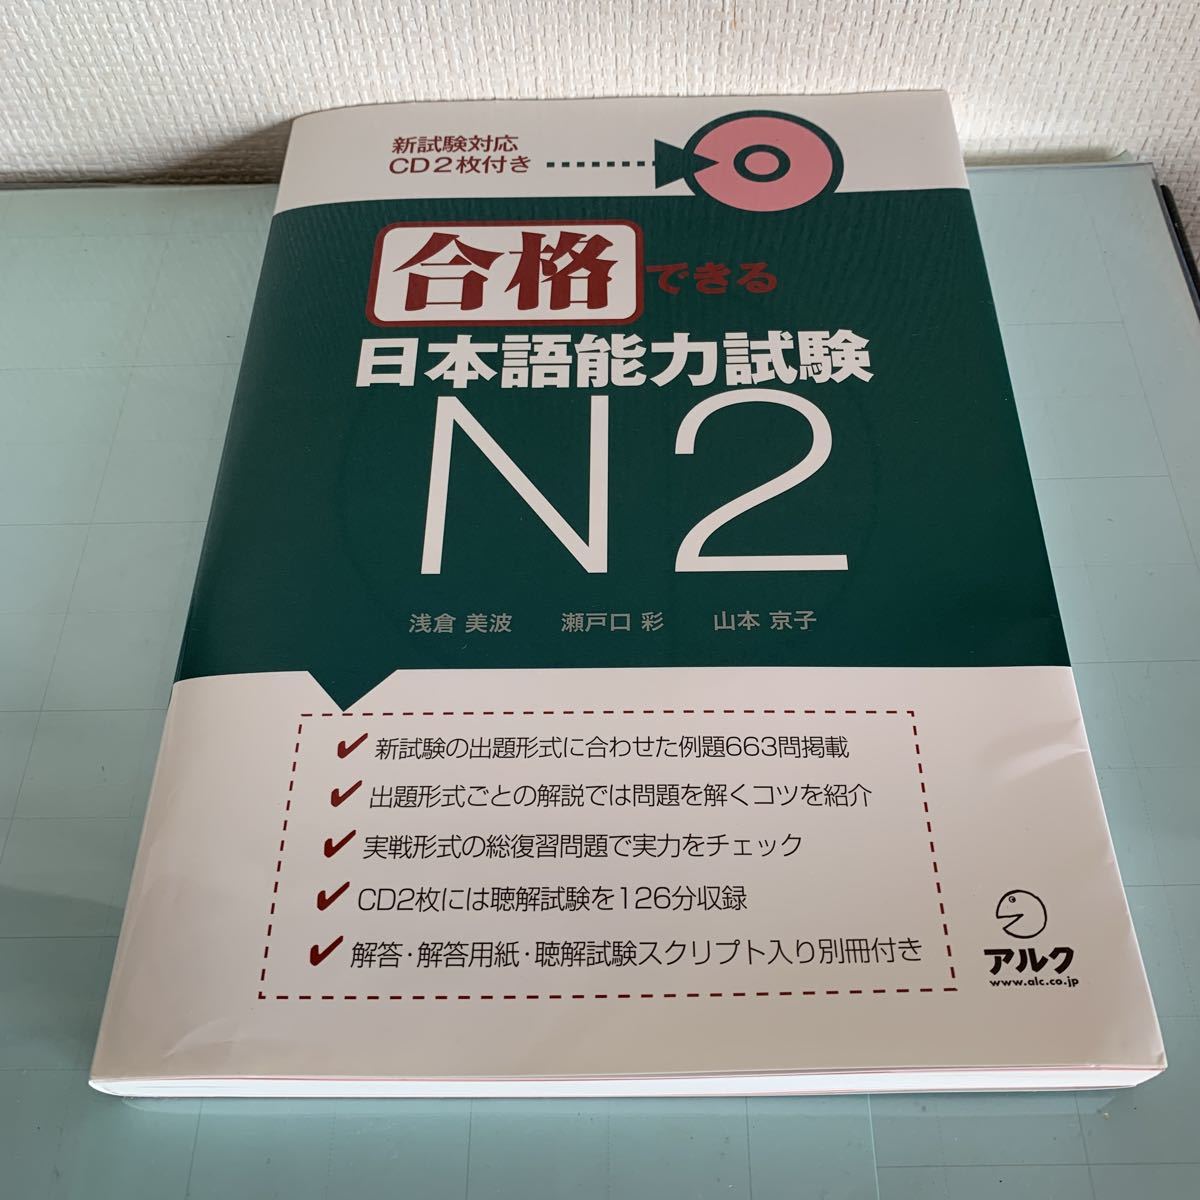 新試験対応CD2枚付き 合格できる 日本語能力試験N2 2011年5月31日3刷発行